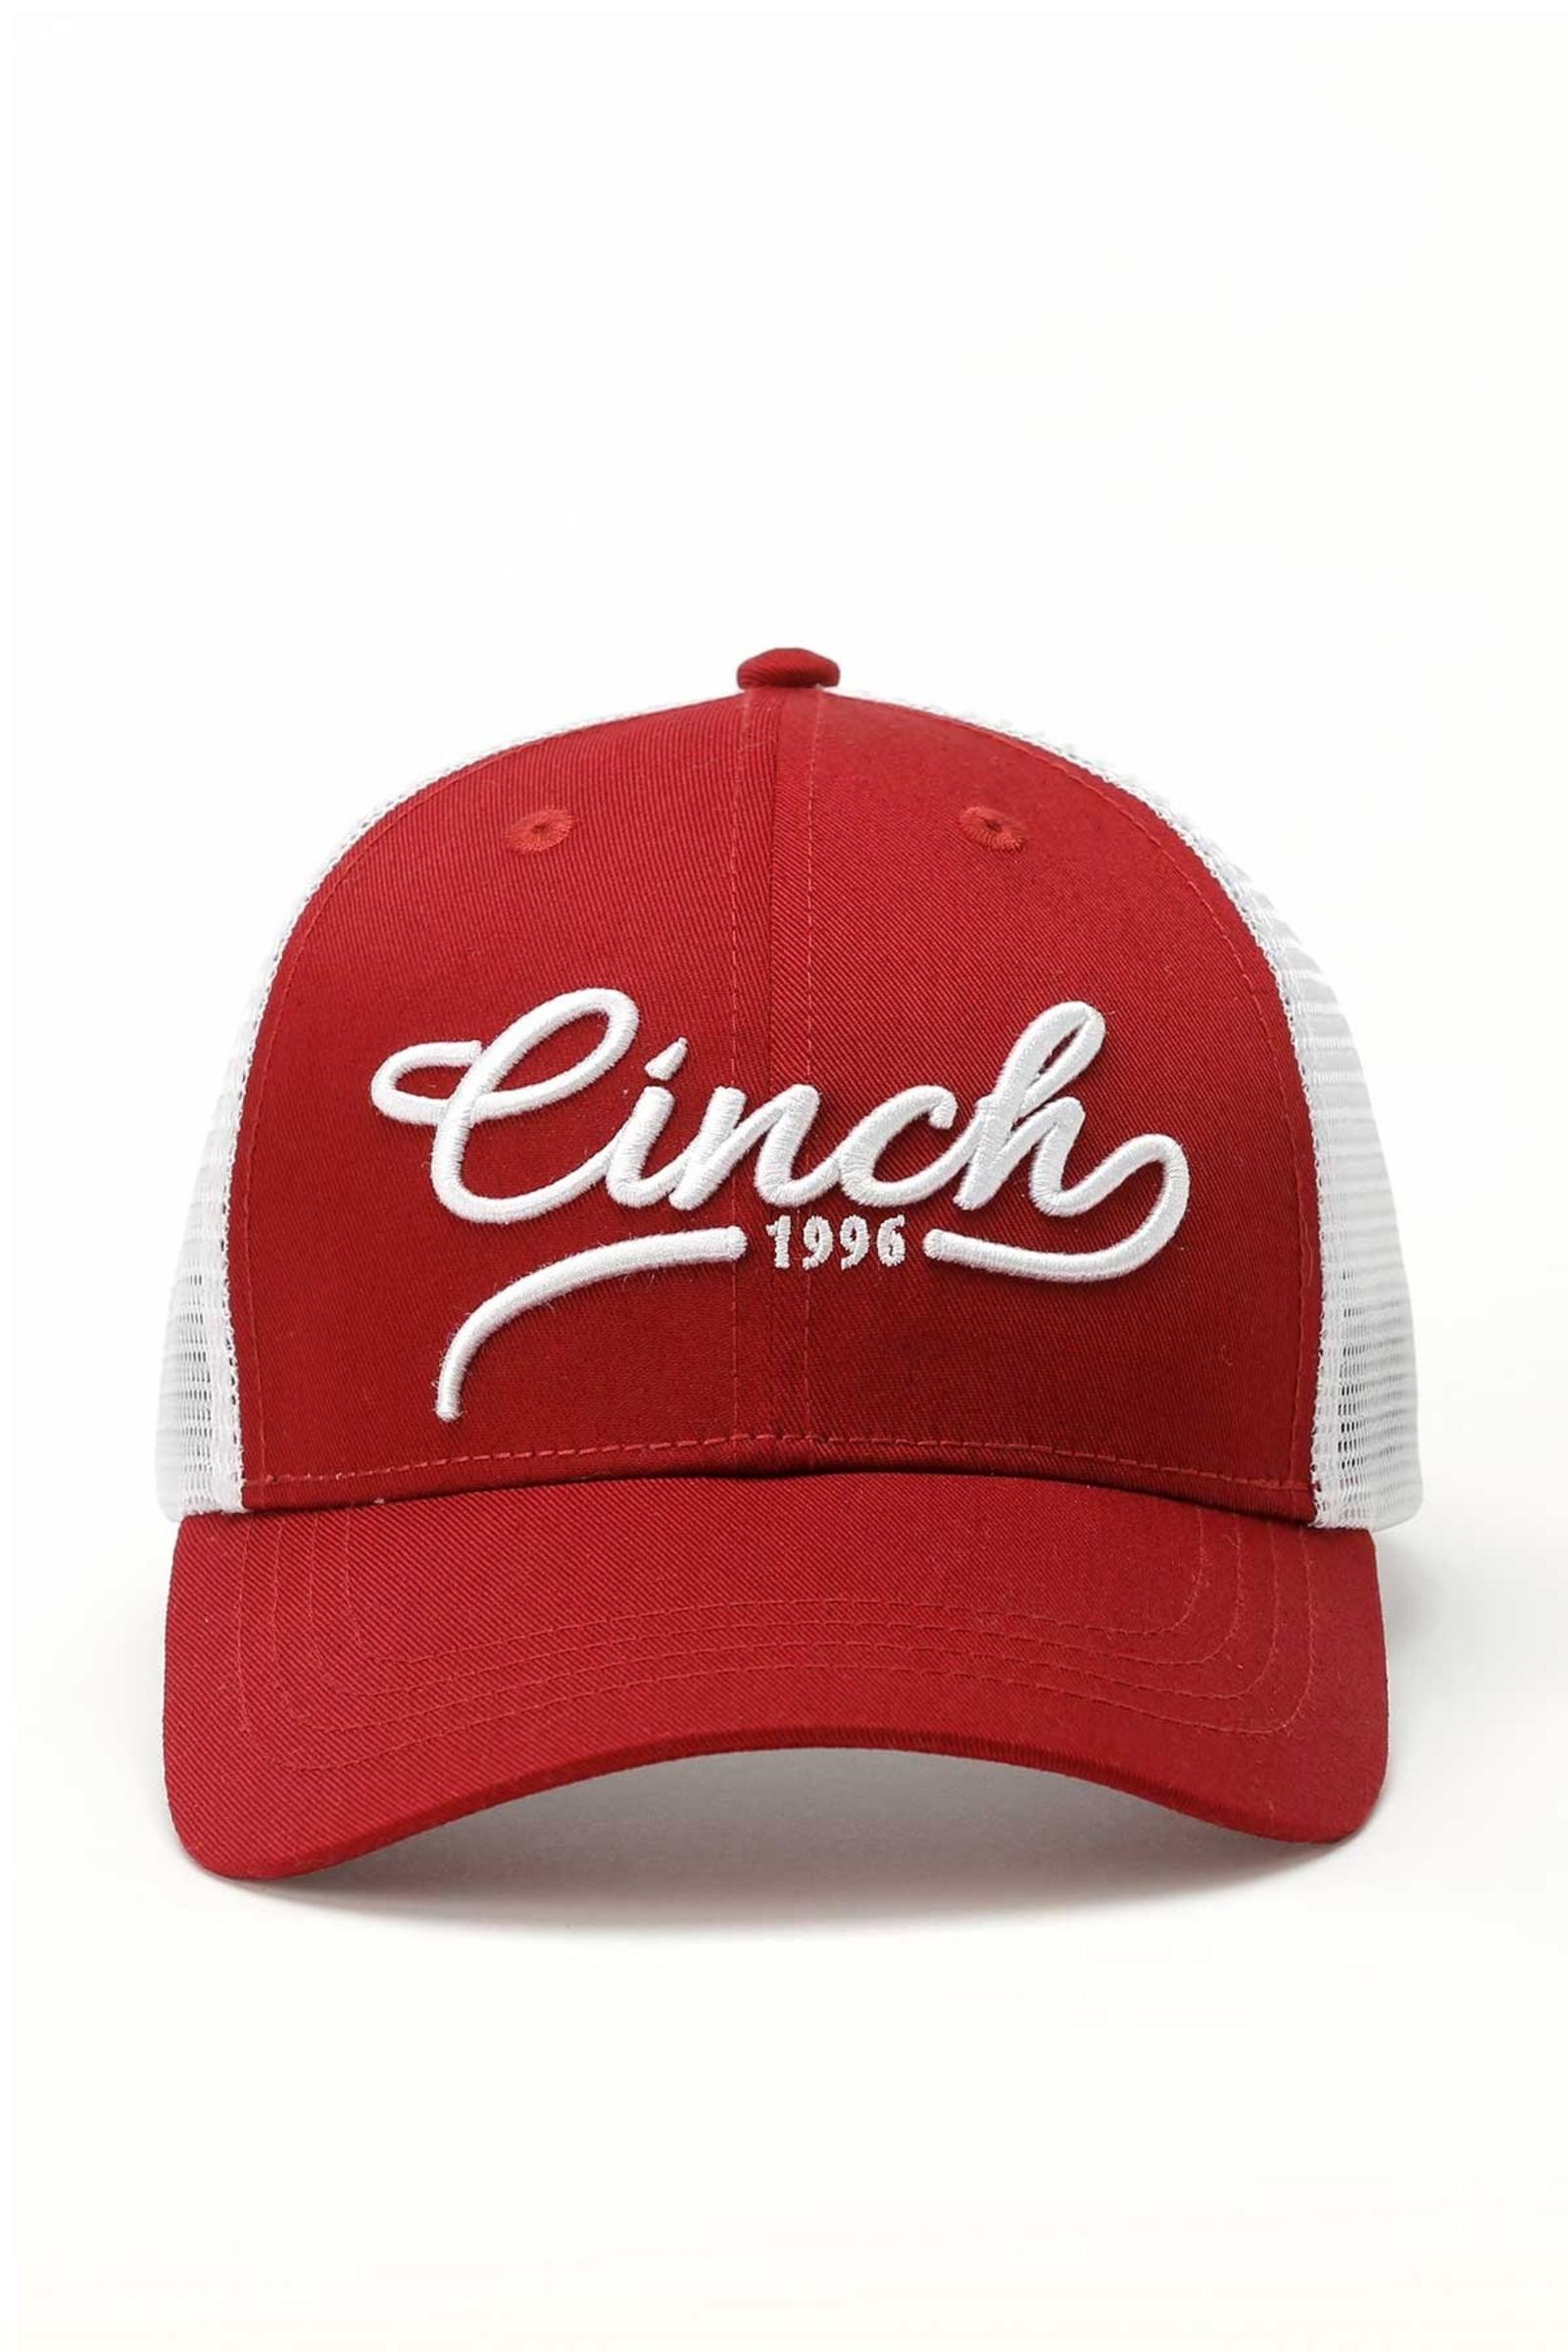 Cinch Men’s 1996 Trucker Cap